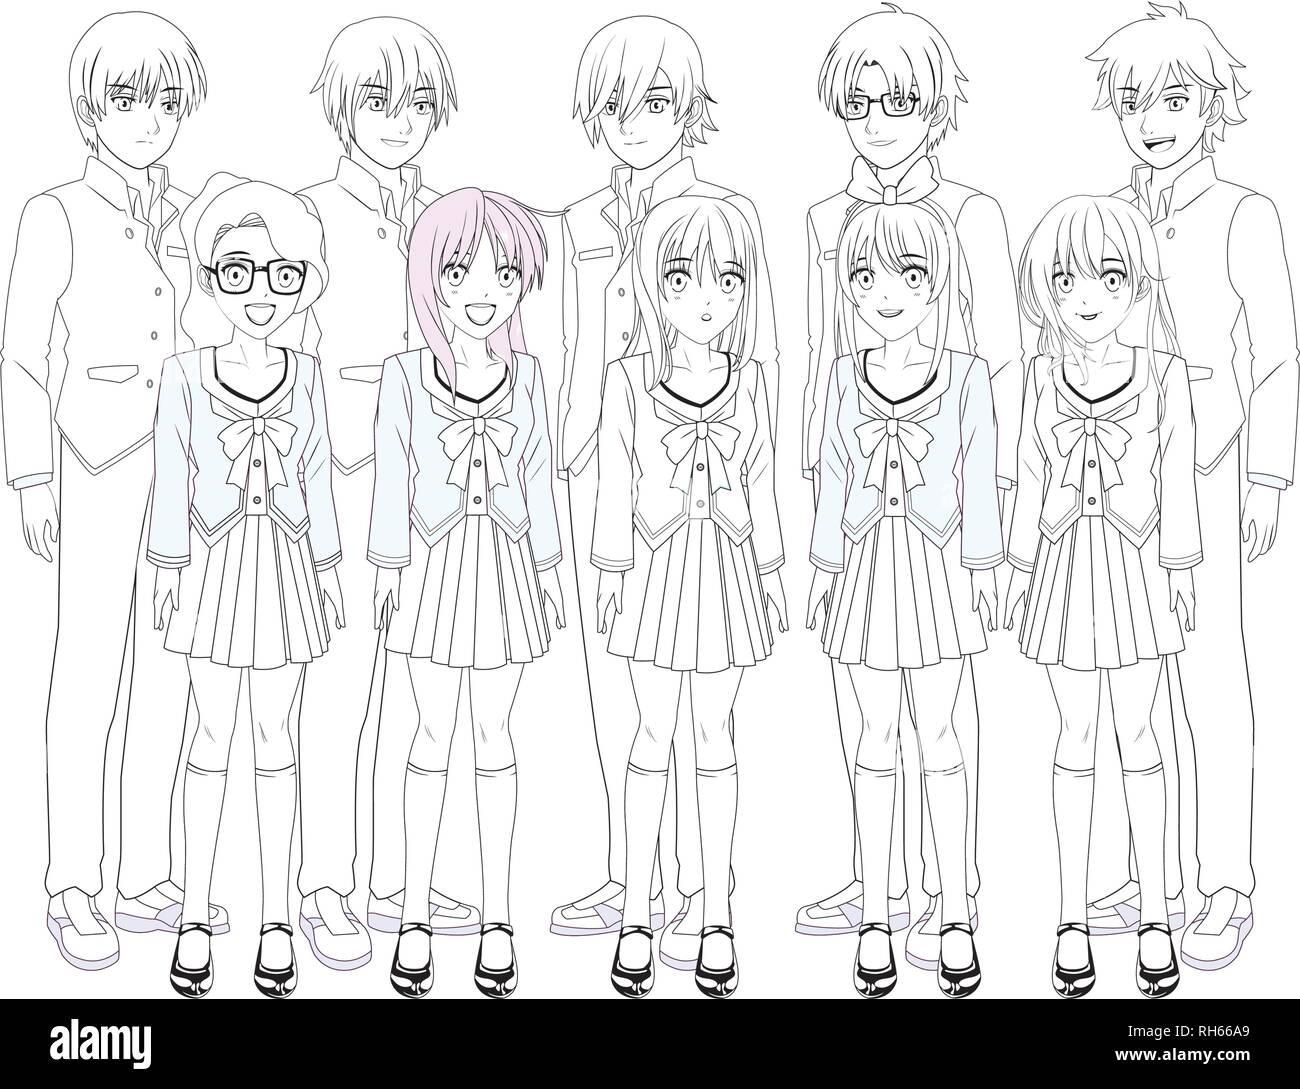 19 Anime Boys Group Wallpapers  WallpaperSafari